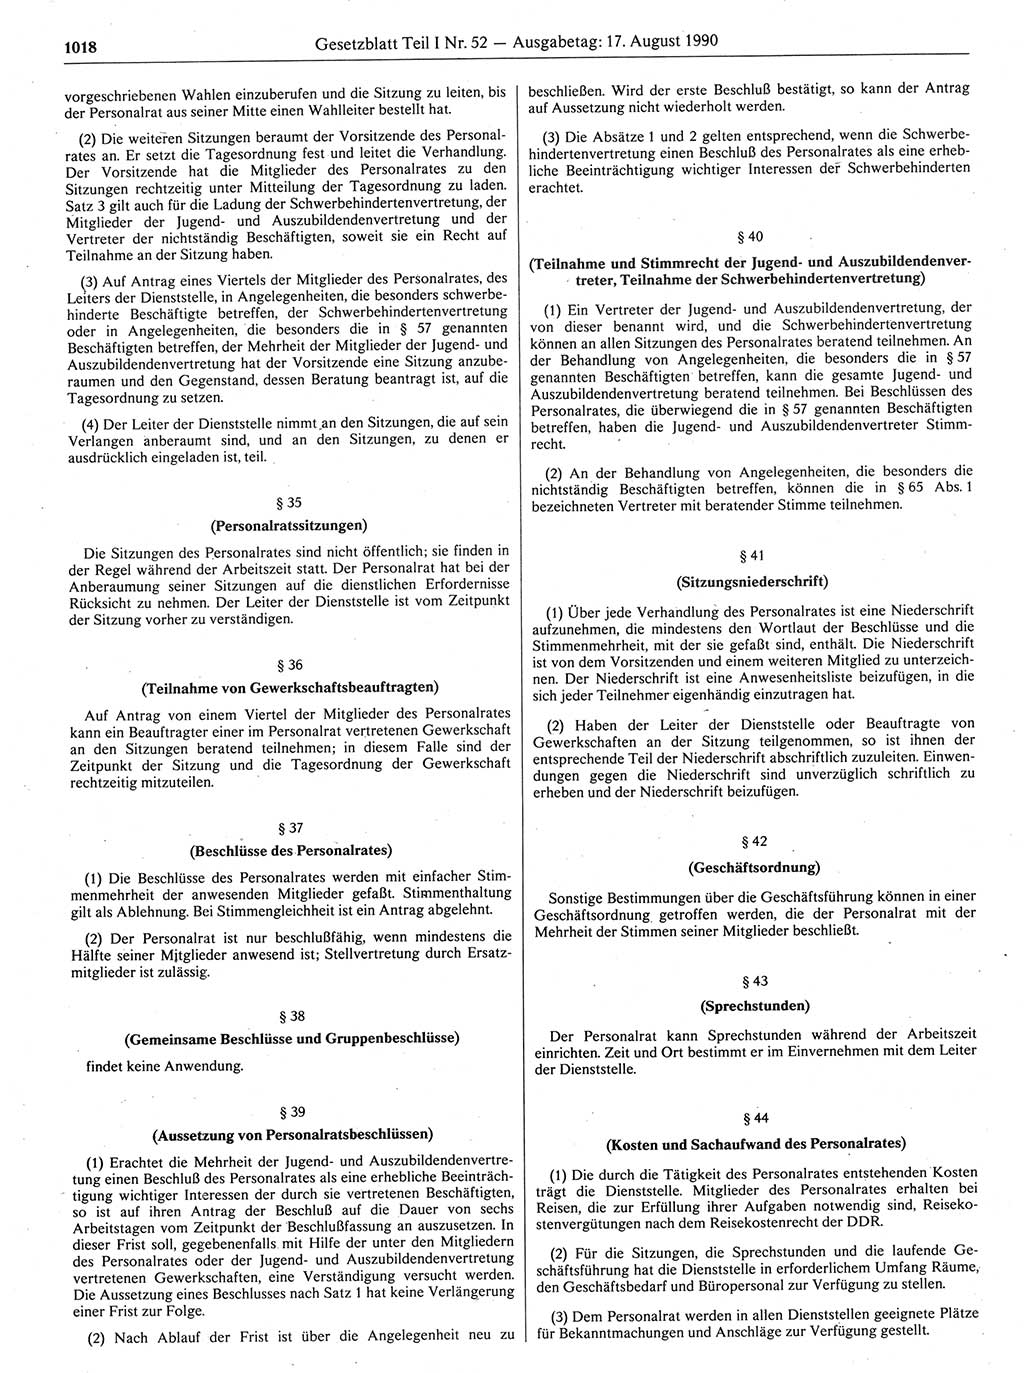 Gesetzblatt (GBl.) der Deutschen Demokratischen Republik (DDR) Teil Ⅰ 1990, Seite 1018 (GBl. DDR Ⅰ 1990, S. 1018)